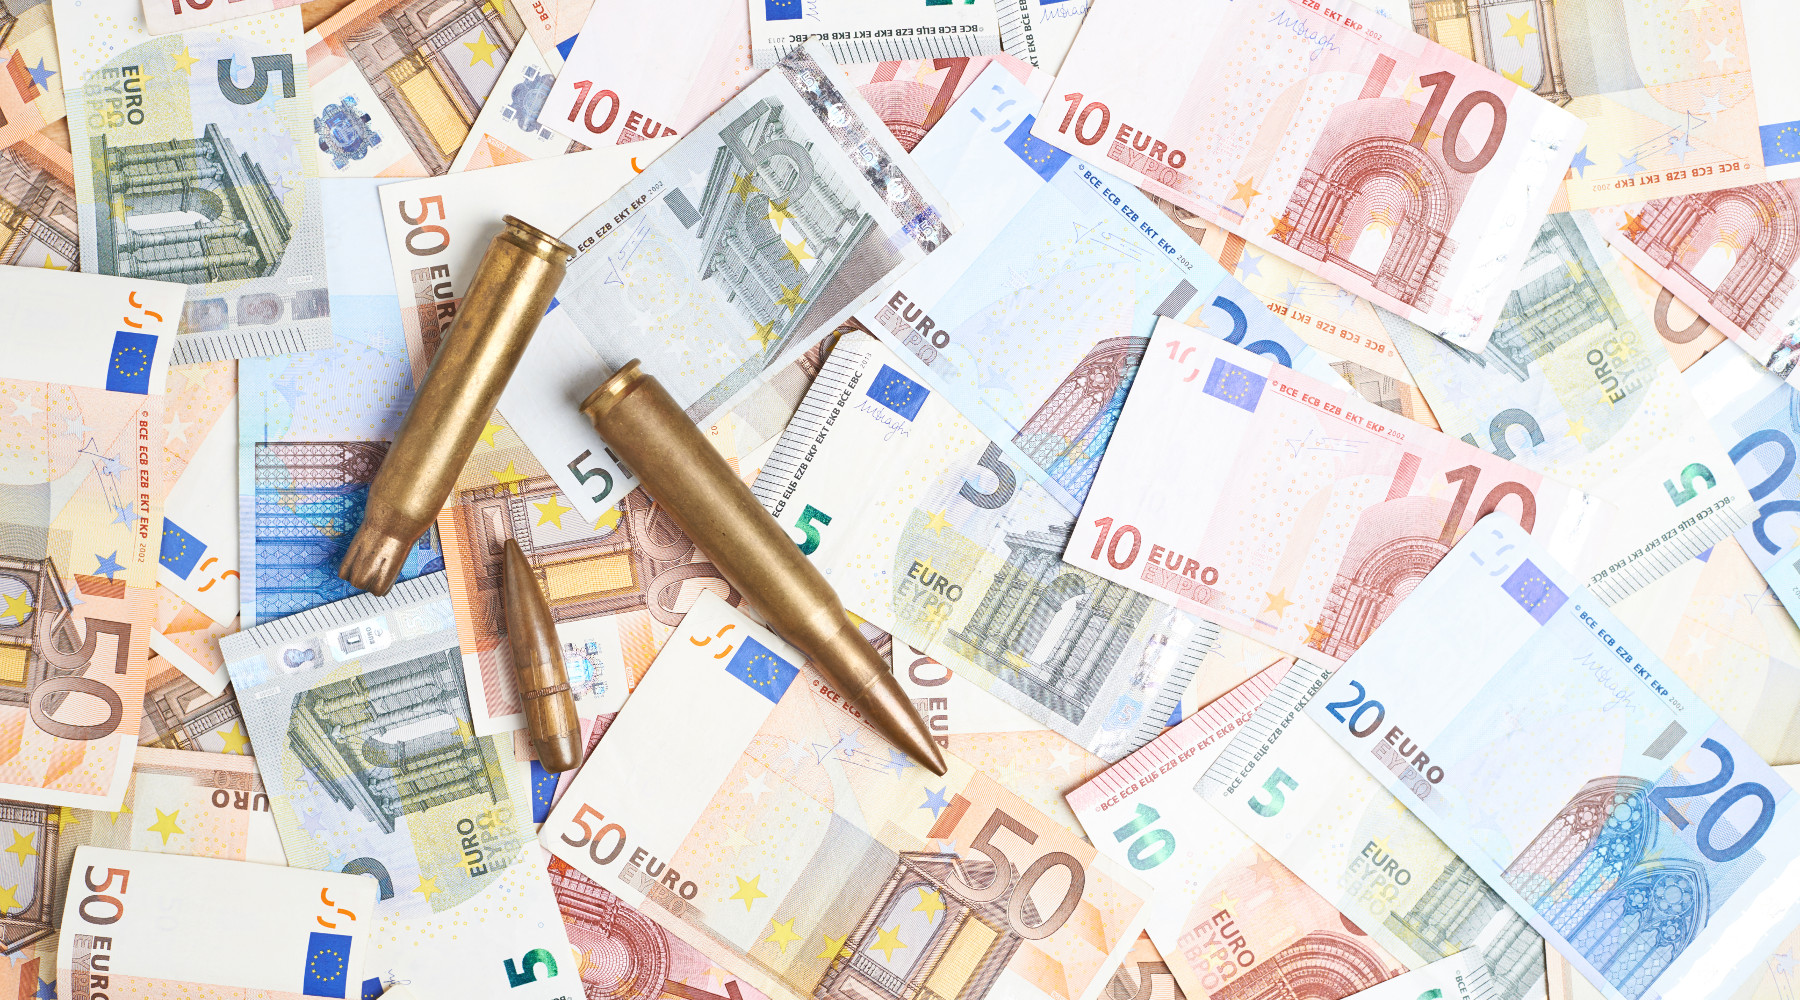 Il valore del settore venatorio: munizioni in mezzo a banconote (euro)